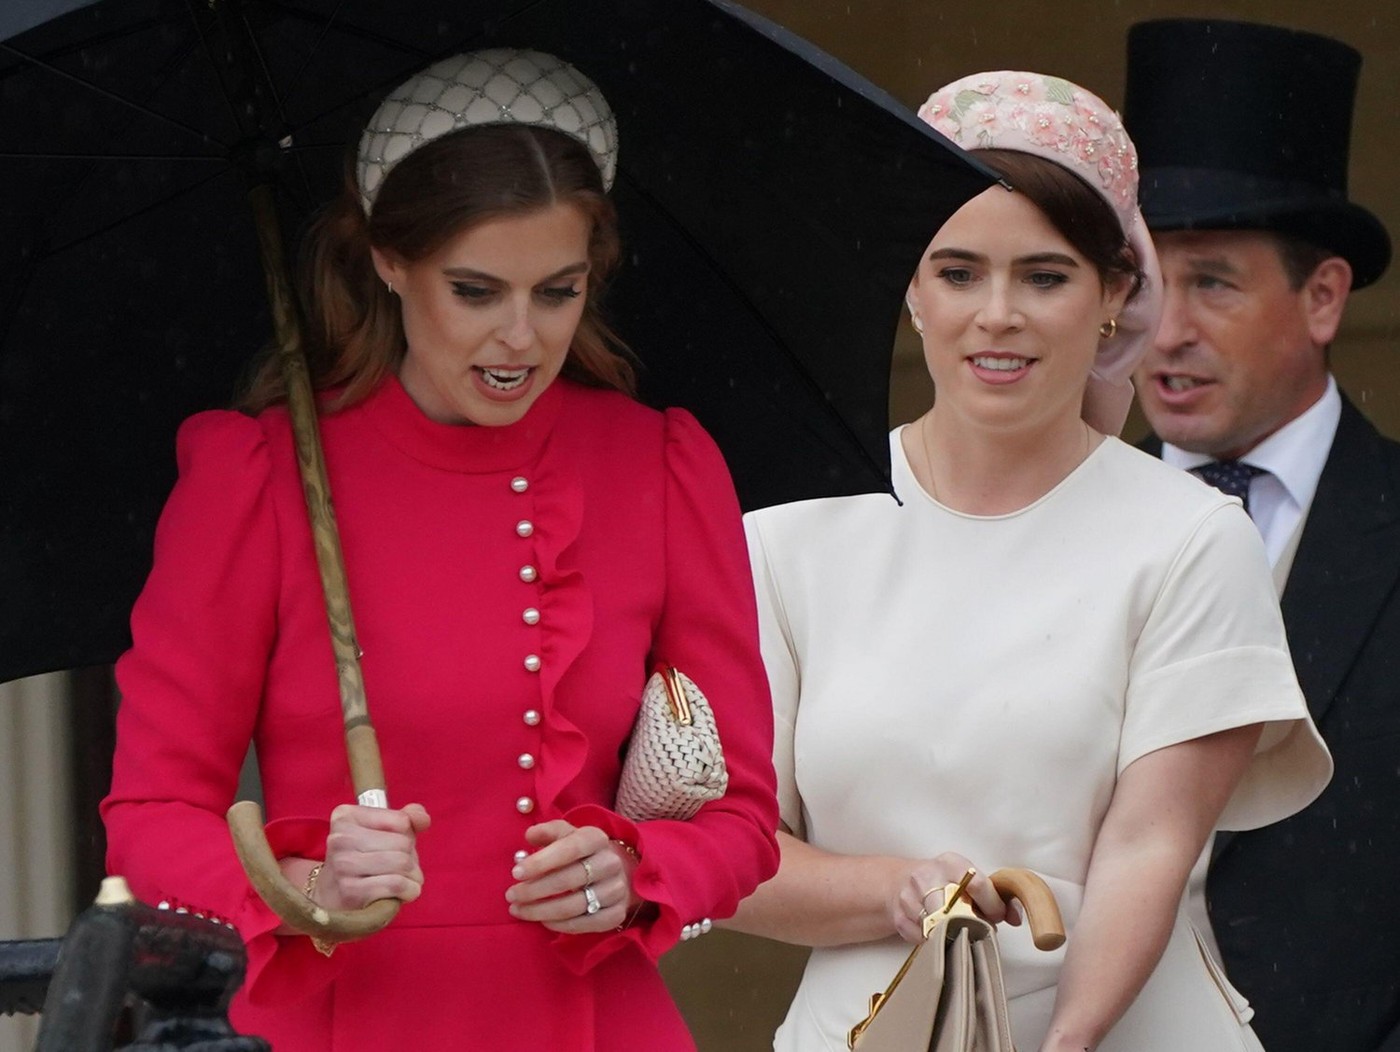 Eugénia és Beatrix azon a bizonyos fogadáson a Buckingham palotában. (fotó: Profimedia)